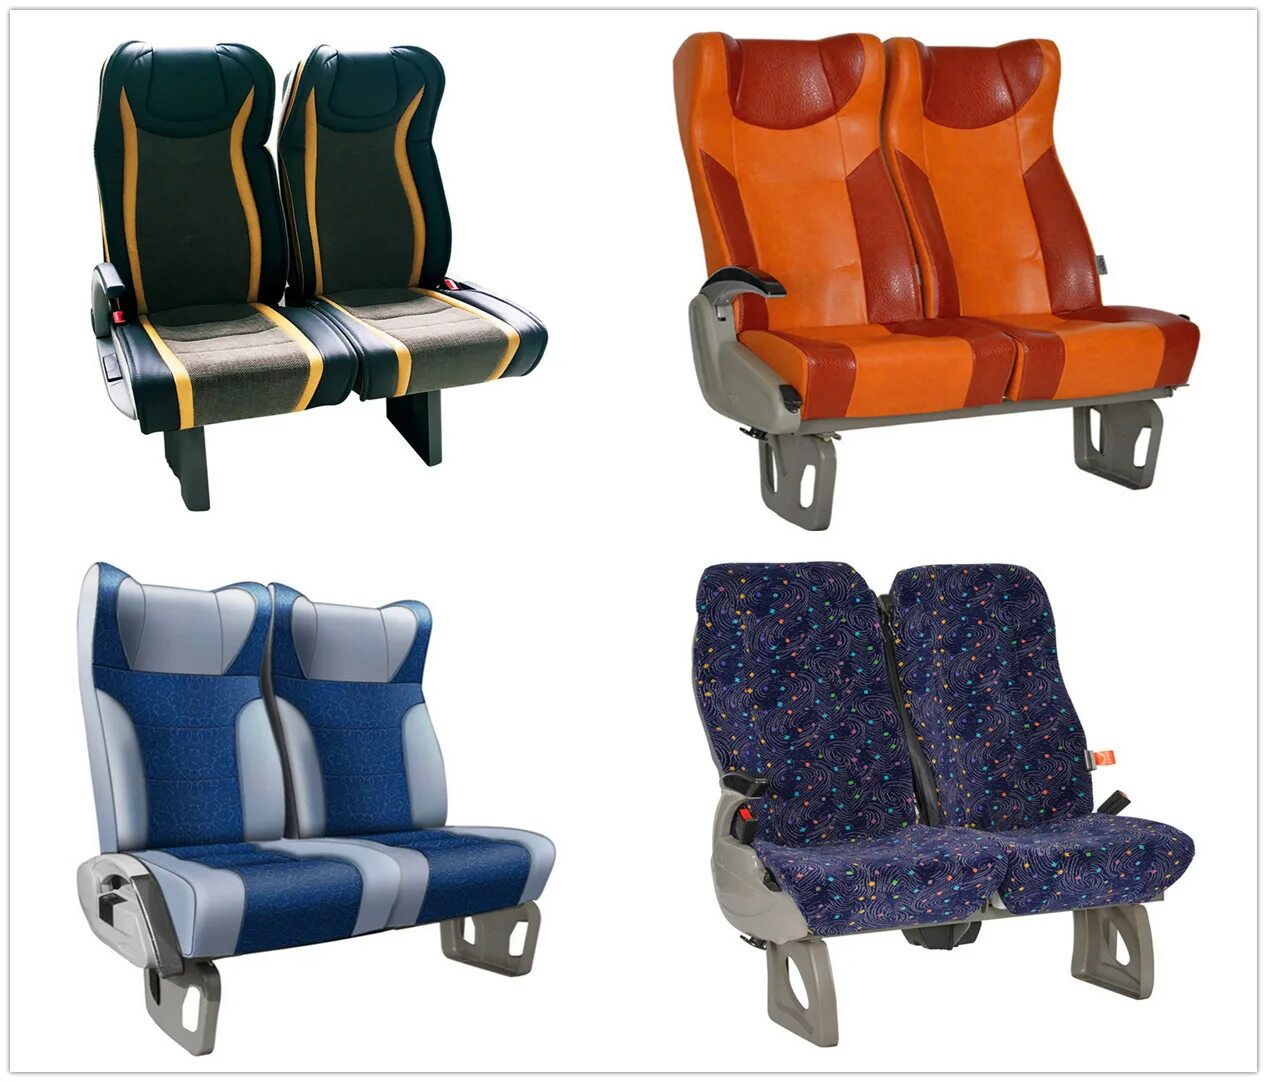 Без пассажирских сидений. Ютонг сиденья. Пассажирское сиденье. Кресло в автобусе. Пассажирские сиденья для автобусов.